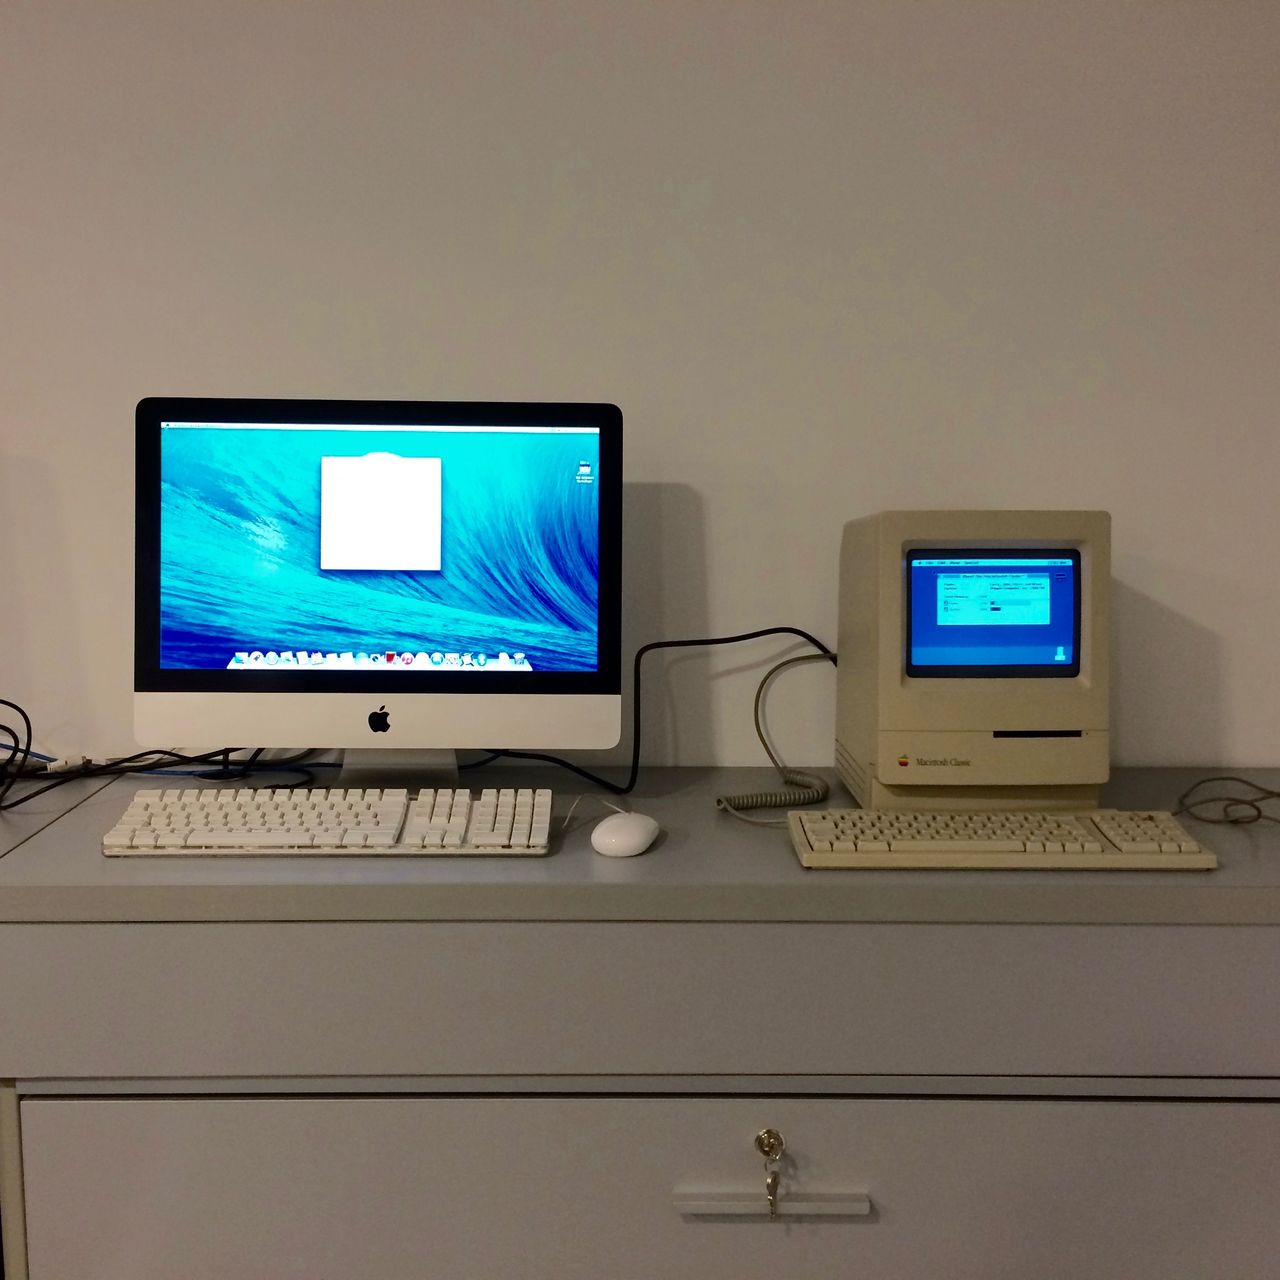 Macintosh Classic dumnie stanął na recepcji naszej firmy, wzbudzając większe zainteresowanie niż iMac.